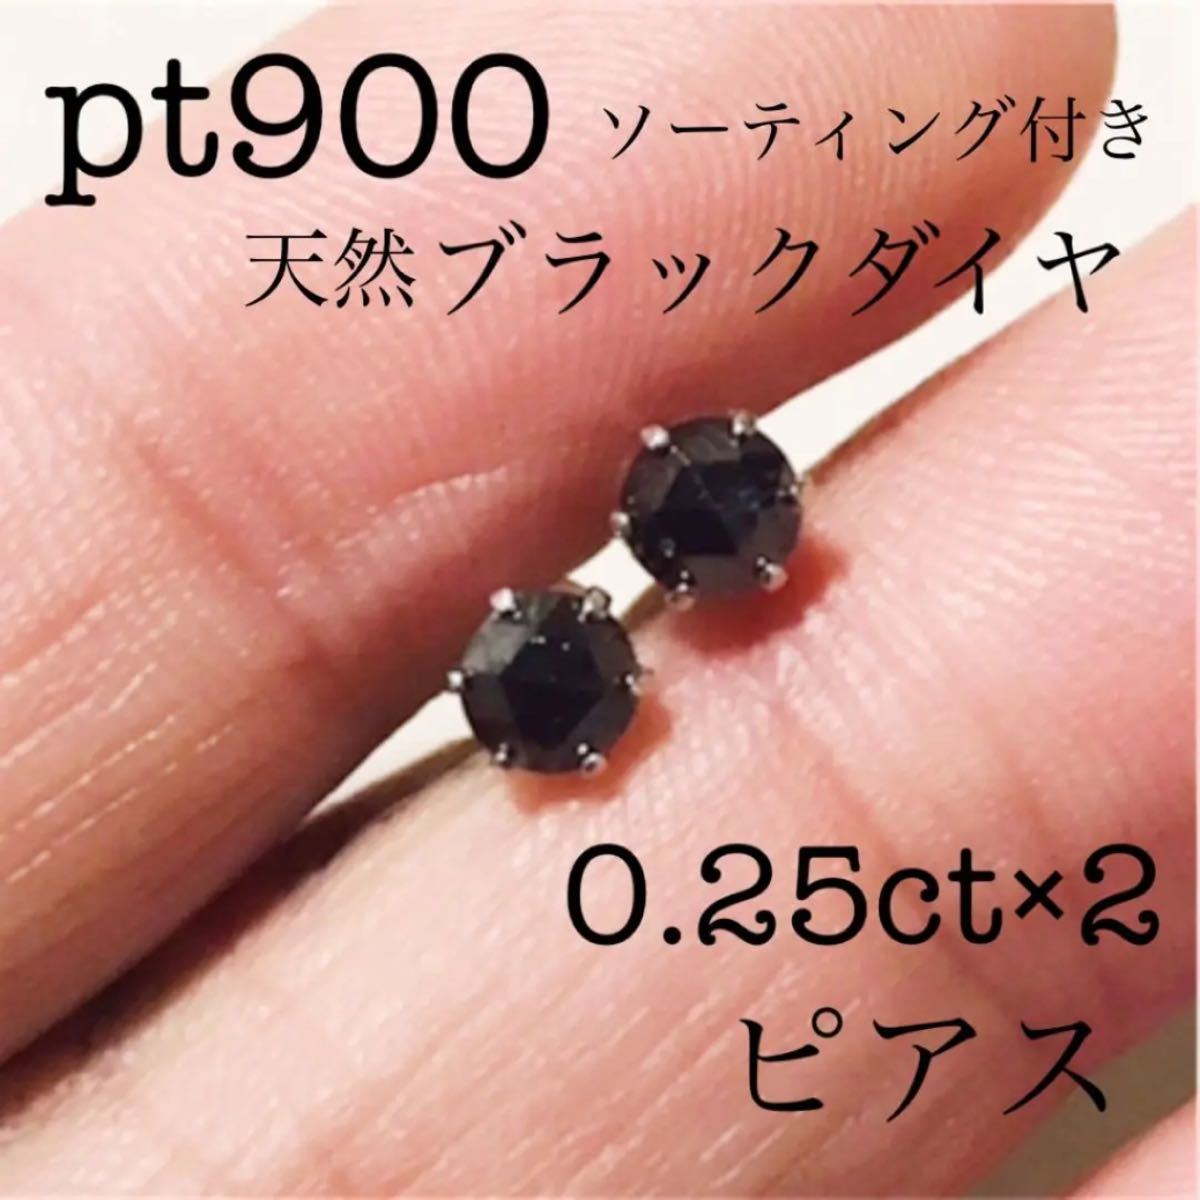 Special 天然ダイヤモンド 計0.50ct ピアス Pt900-